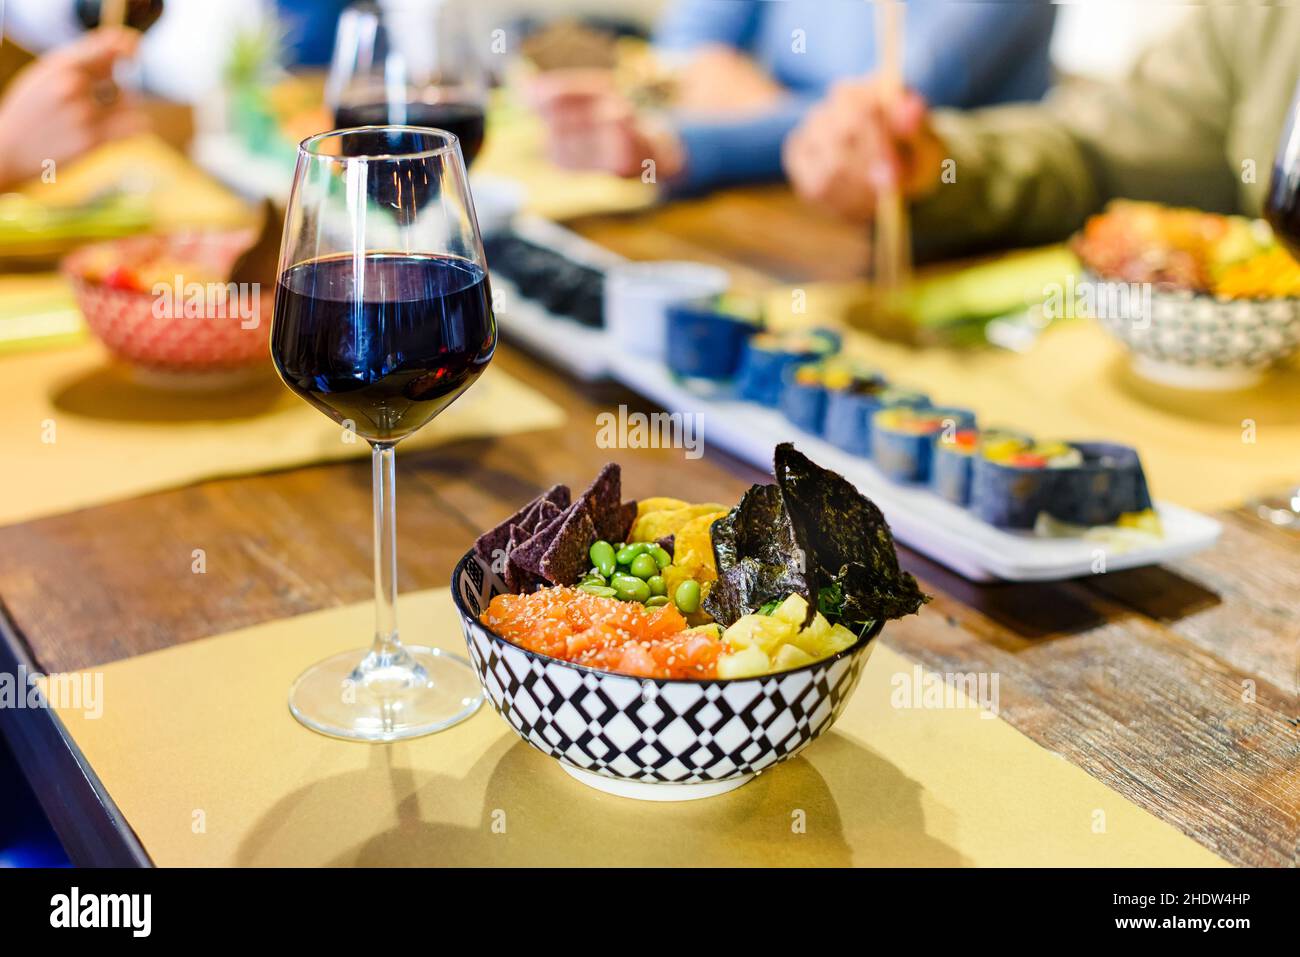 Eine Schüssel mit frischem Poke und einem Glas Rotwein, serviert auf einem Restauranttisch, mit verschiedenen Meeresfrüchten und Sushi, die für eine Gruppe von Leuten zum Essen bereit sind Stockfoto